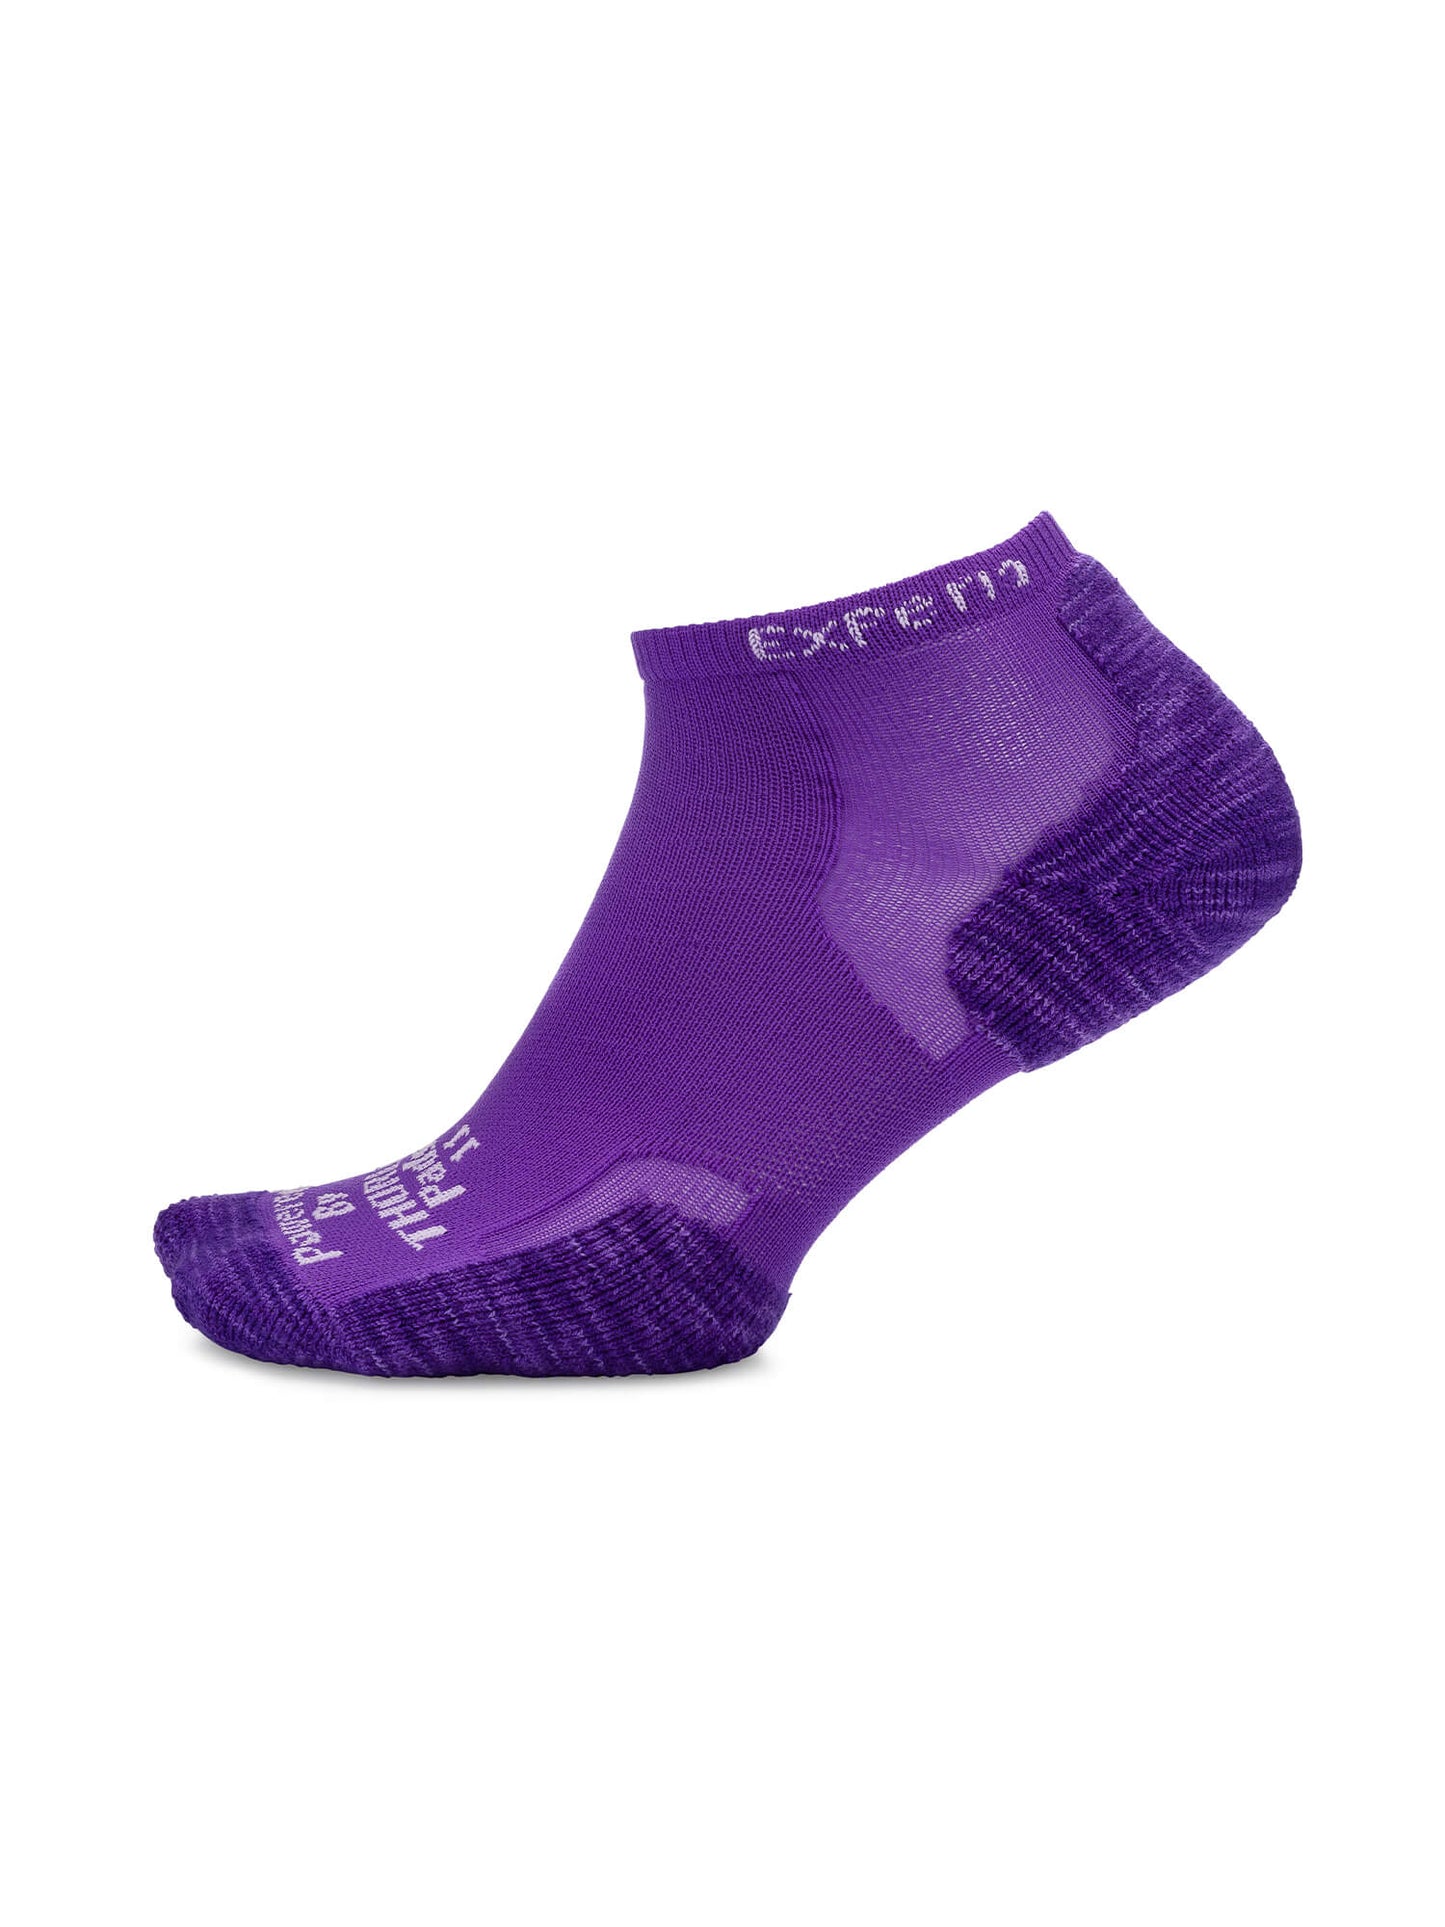 Purple Thorlos Experia Coolmax Micro Mini Socks